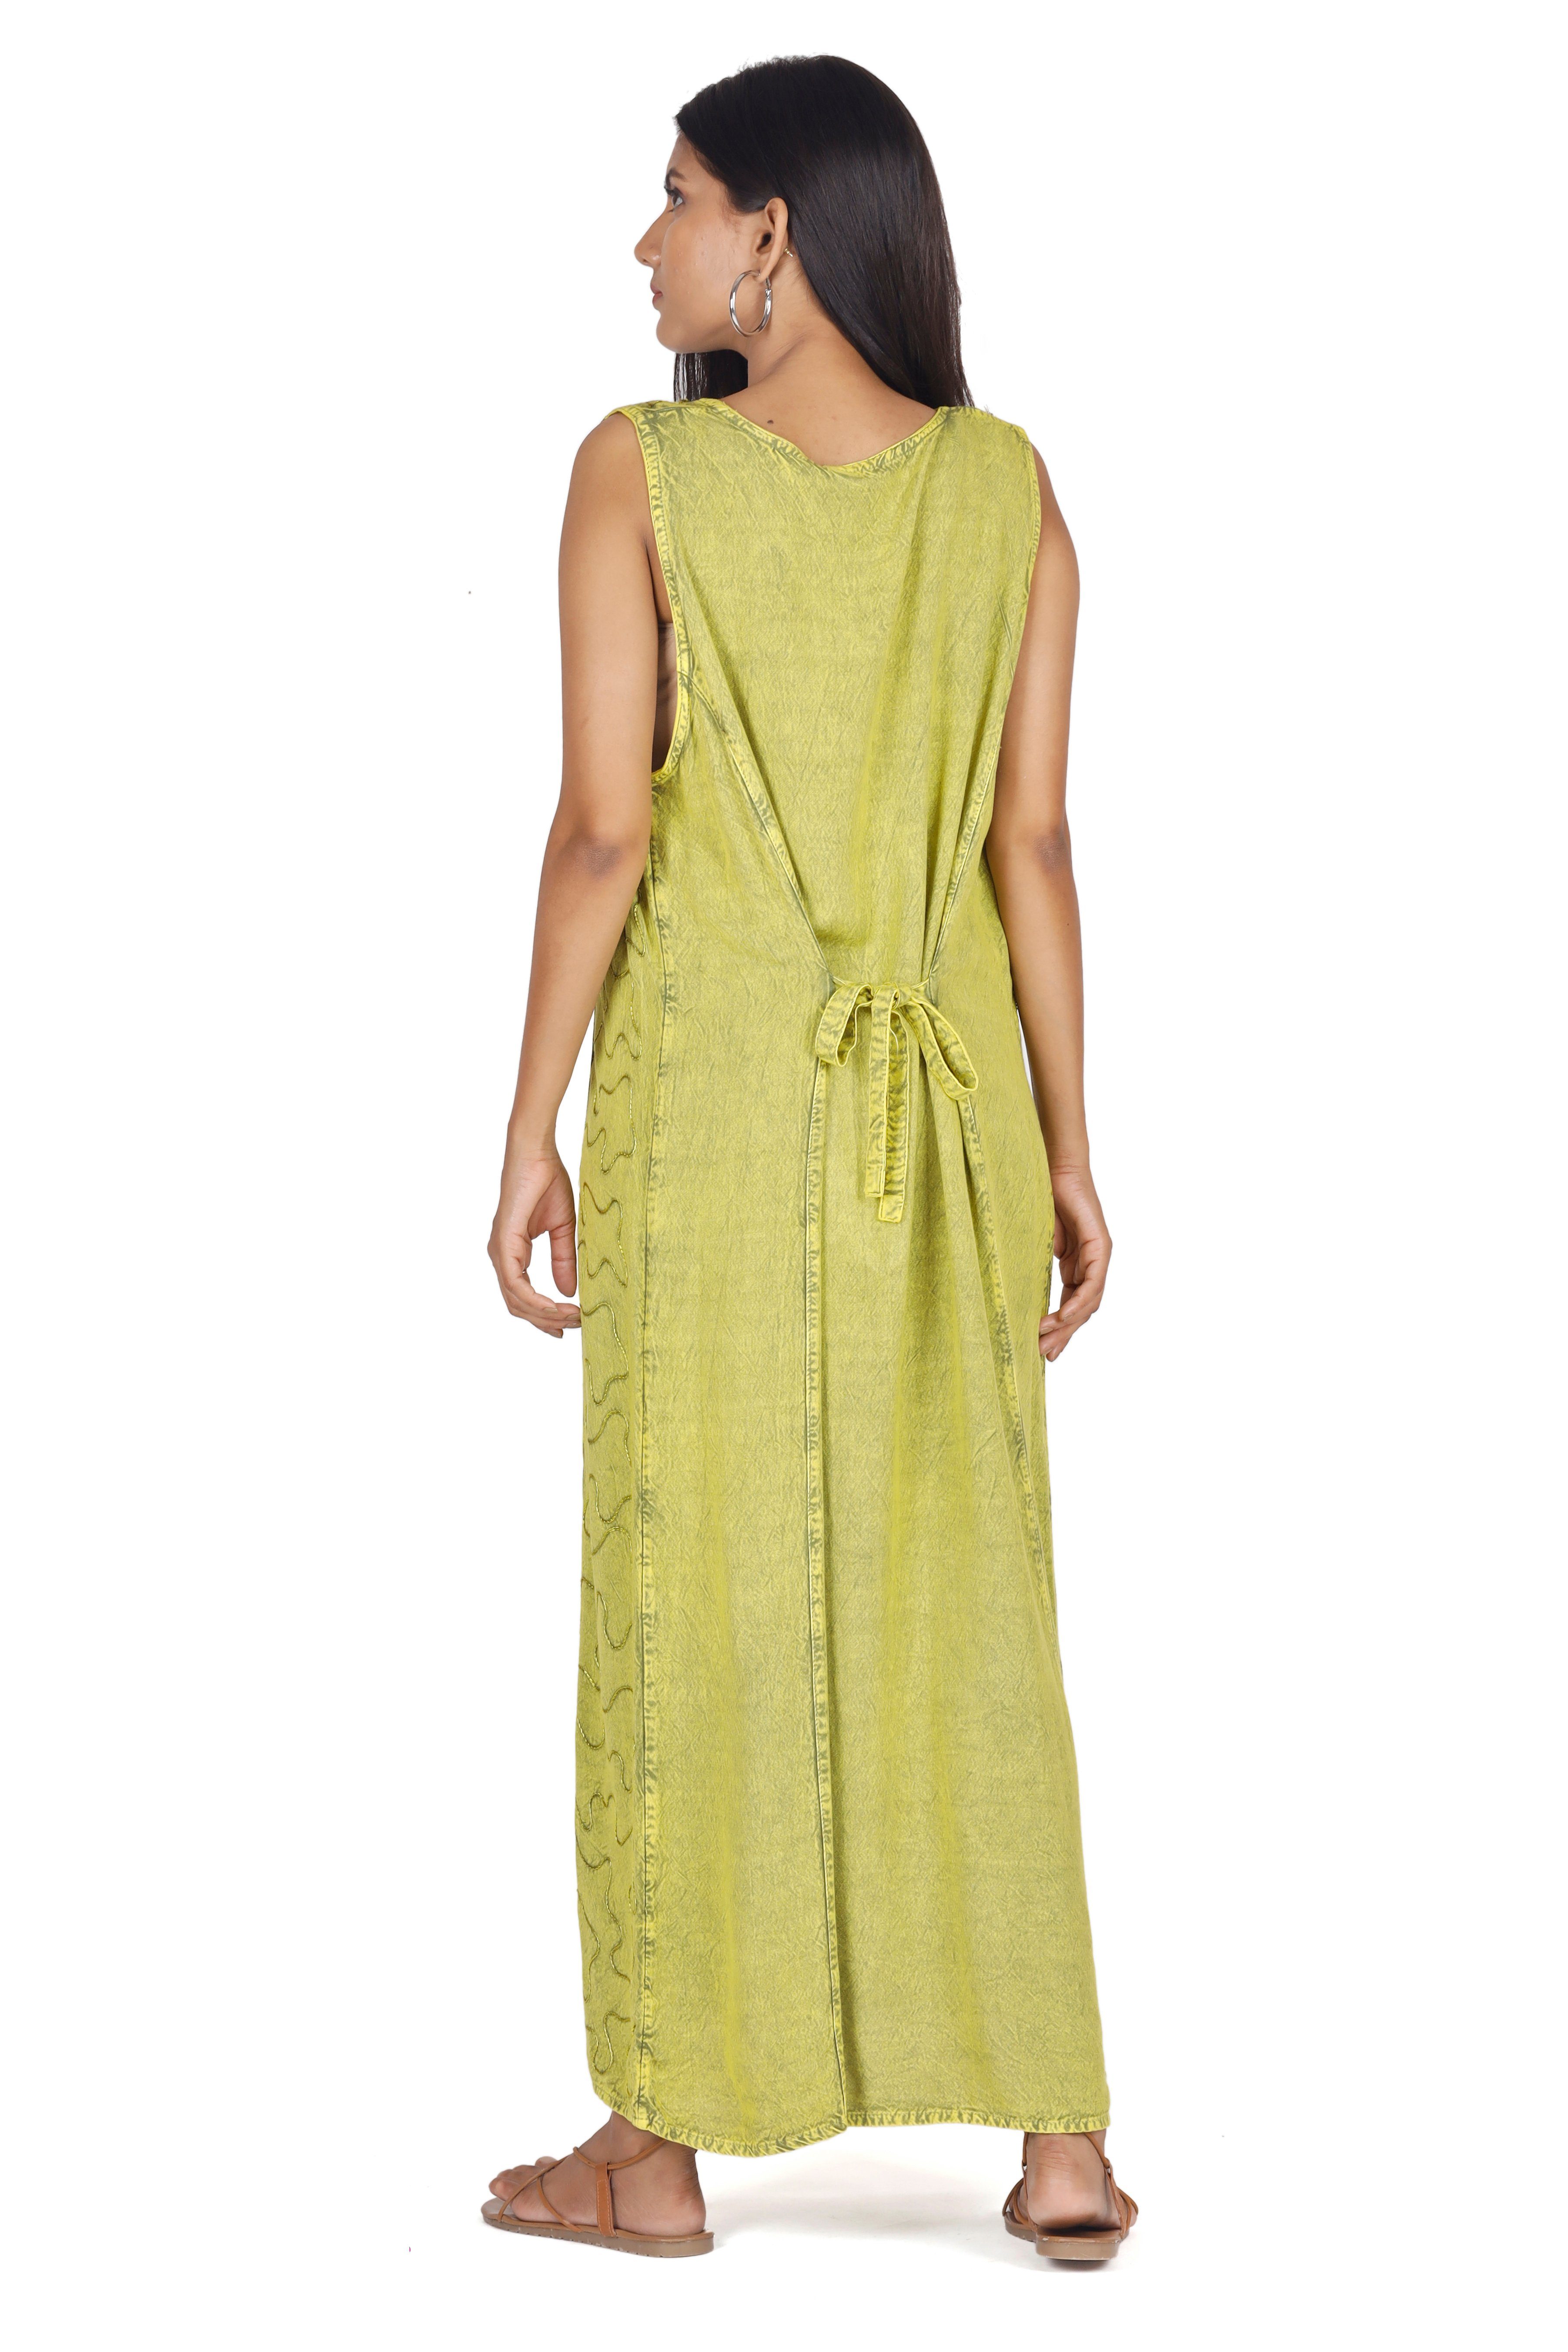 Bekleidung indisches Sommerkleid, Guru-Shop Besticktes Midikleid 4 lemon/Design Hippie.. Boho alternative